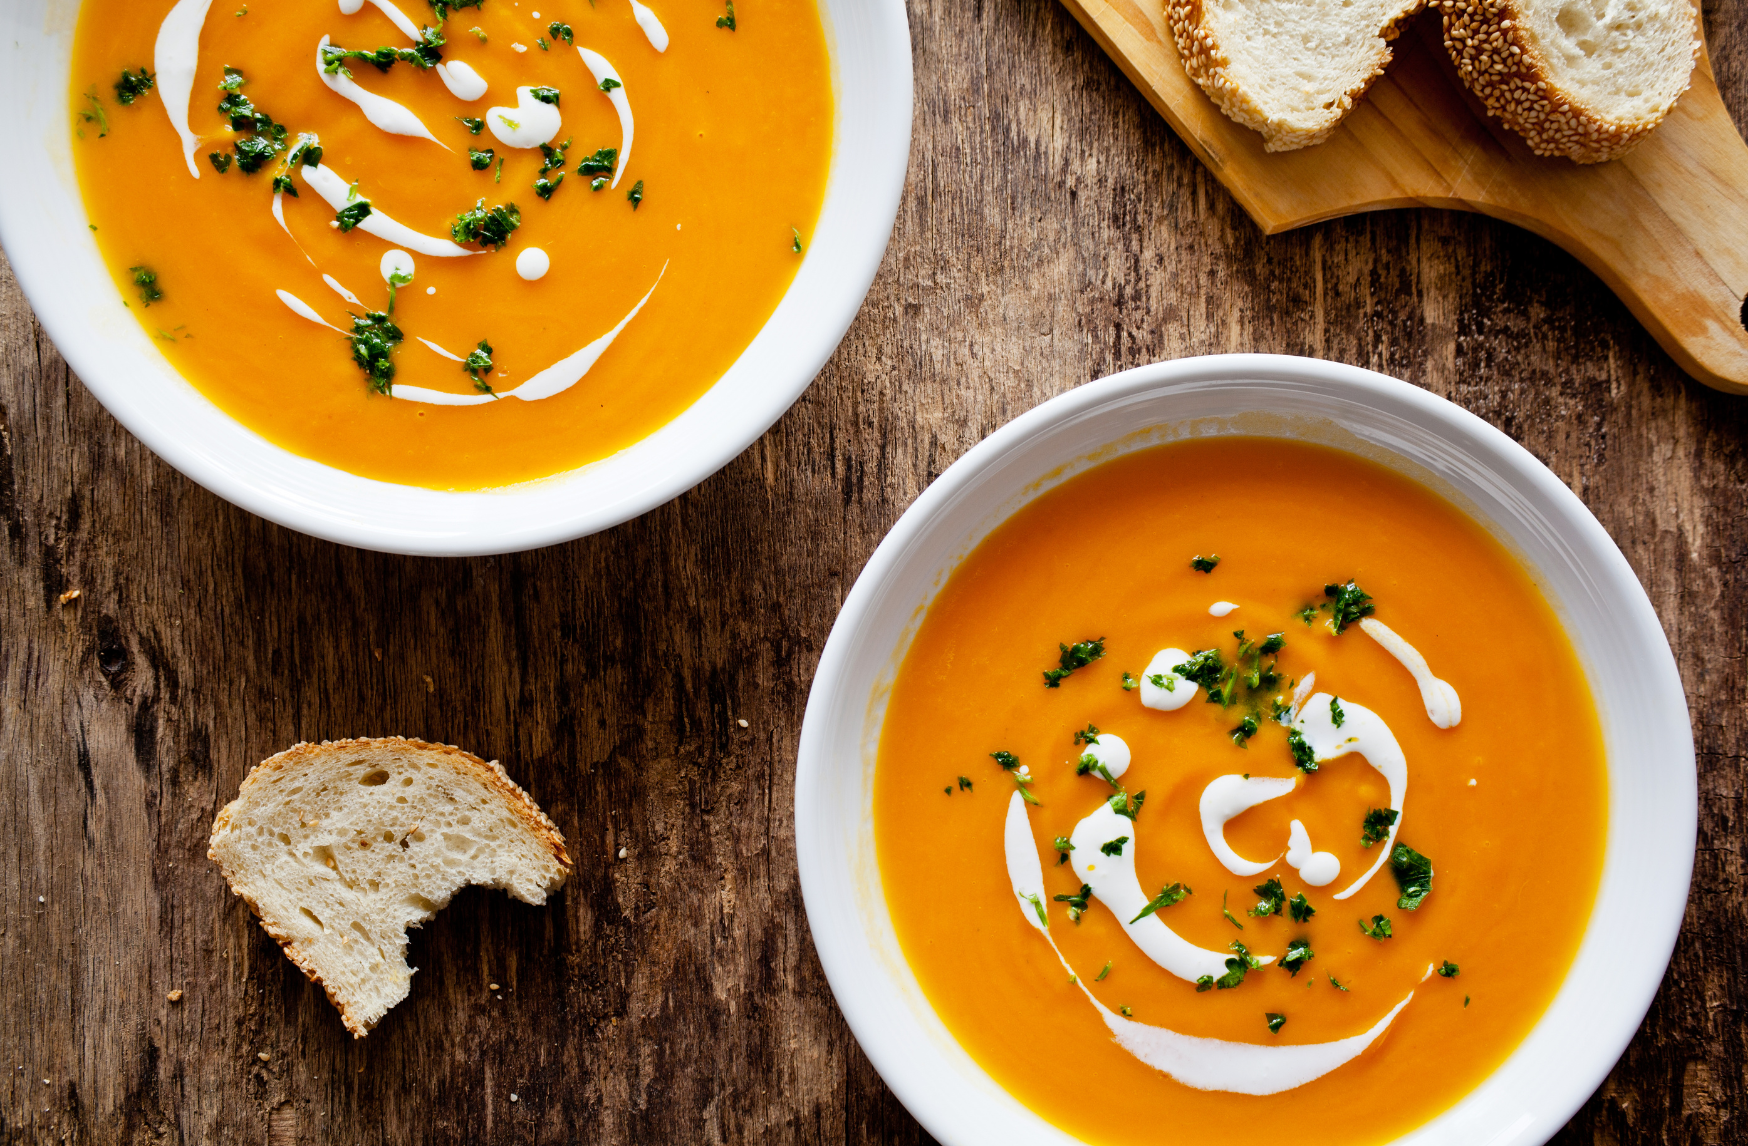 Par une froide journée d'automne ou d'hiver, il n'y a rien de plus agréable qu'un bol de soupe de carottes chaude et crémeuse, infusée avec les notes sucrées du miel. Cette soupe n'est pas seulement délicieuse, elle est aussi pleine de vitamines et de minéraux.